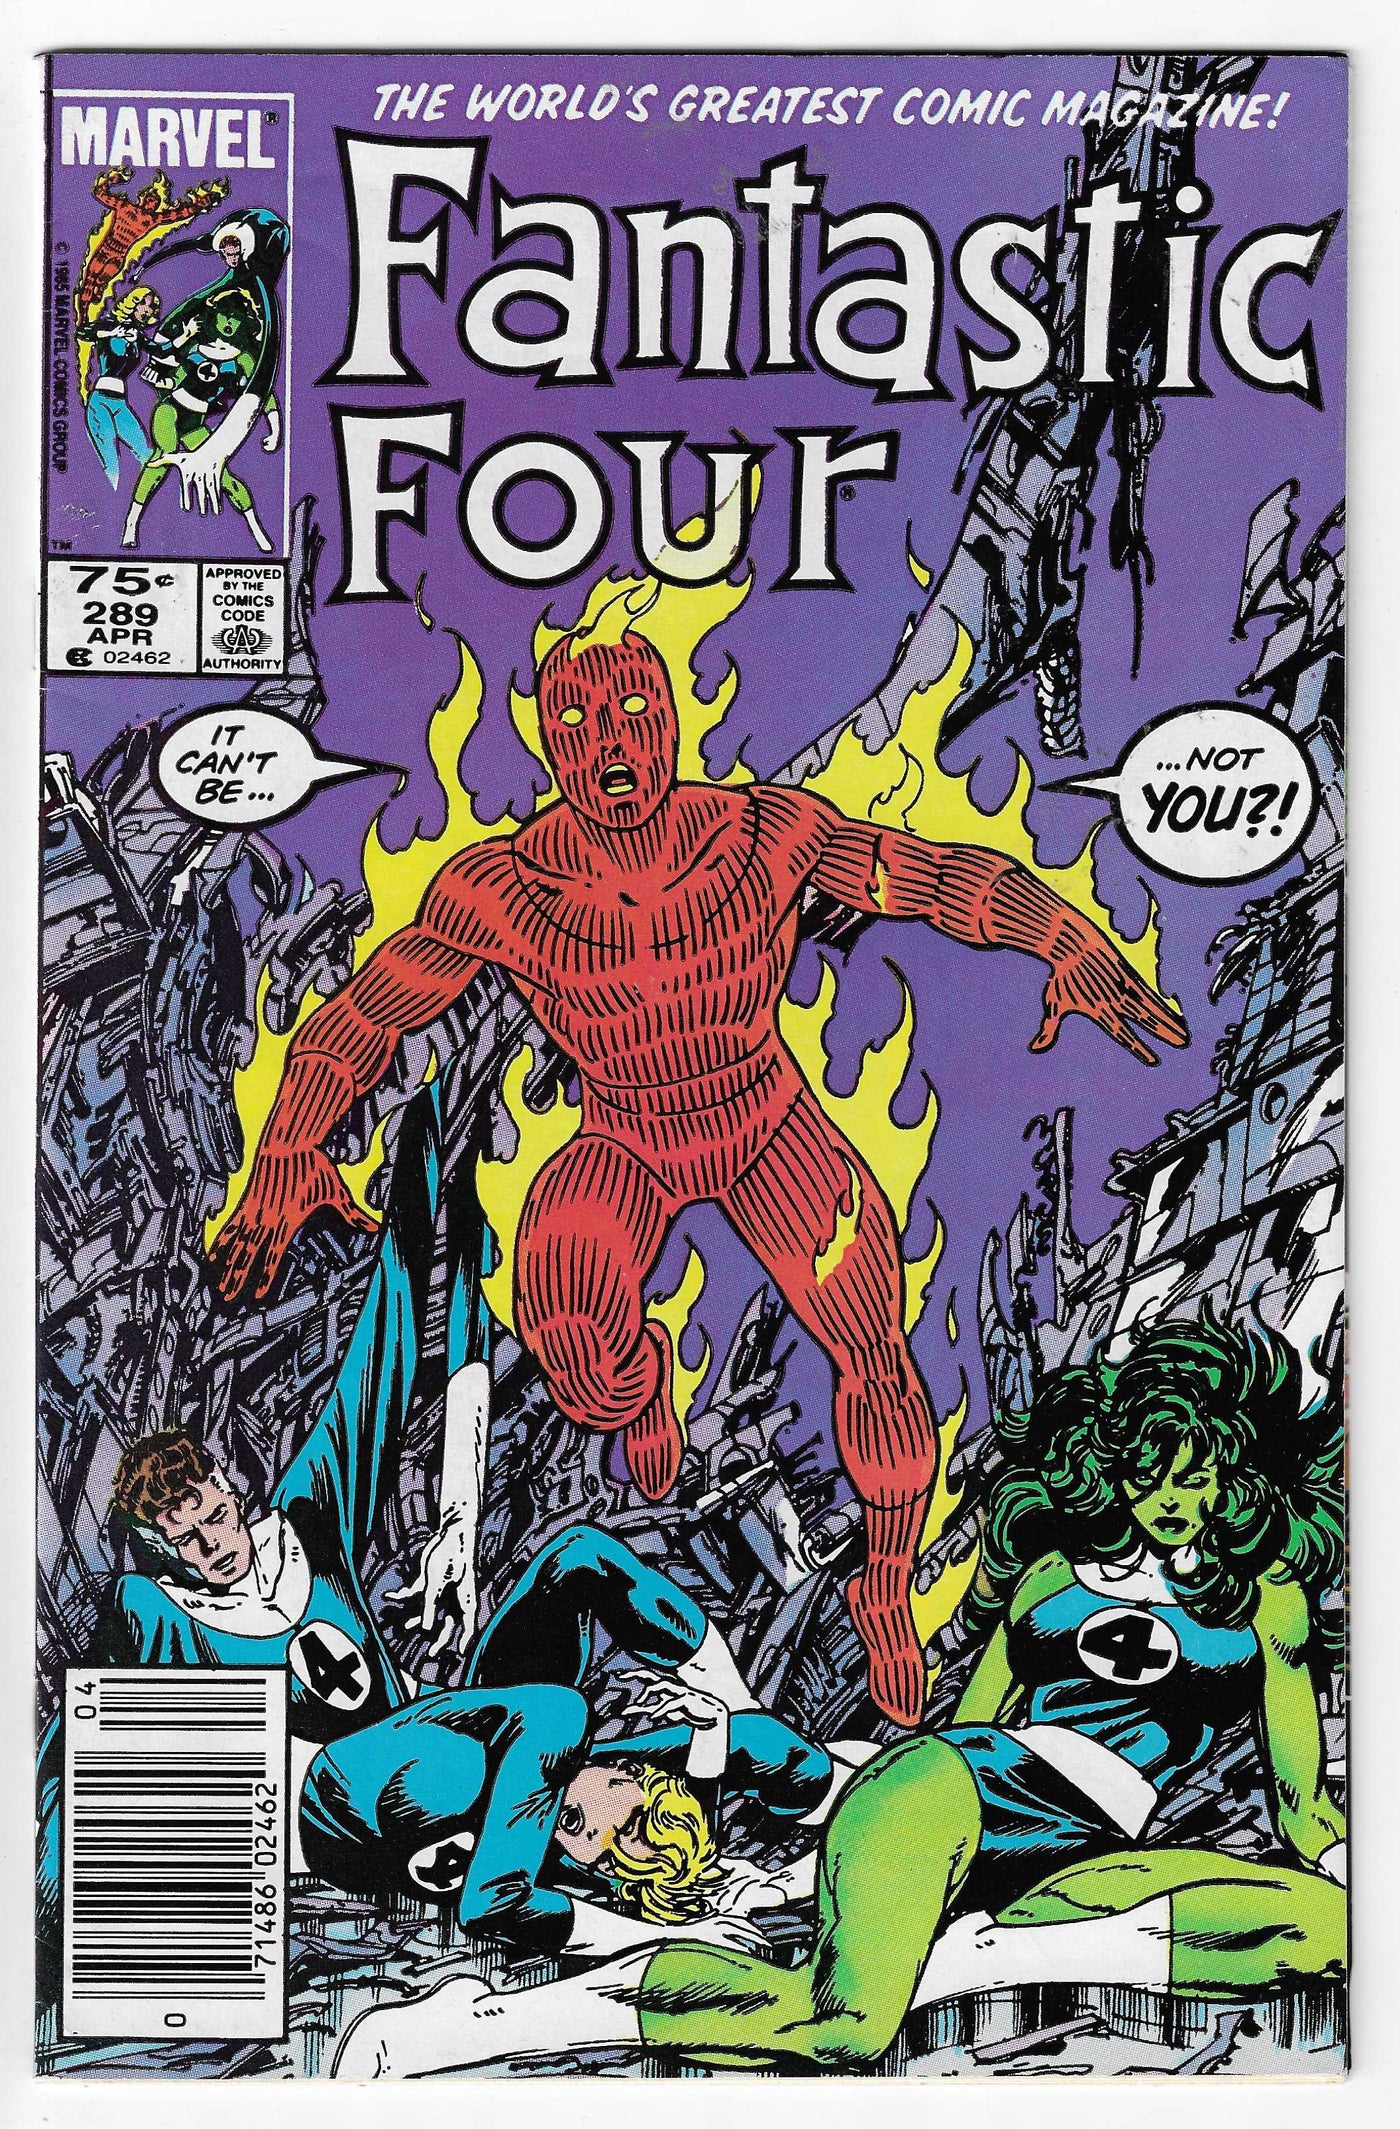 Fantastic Four (Volume 1) #289